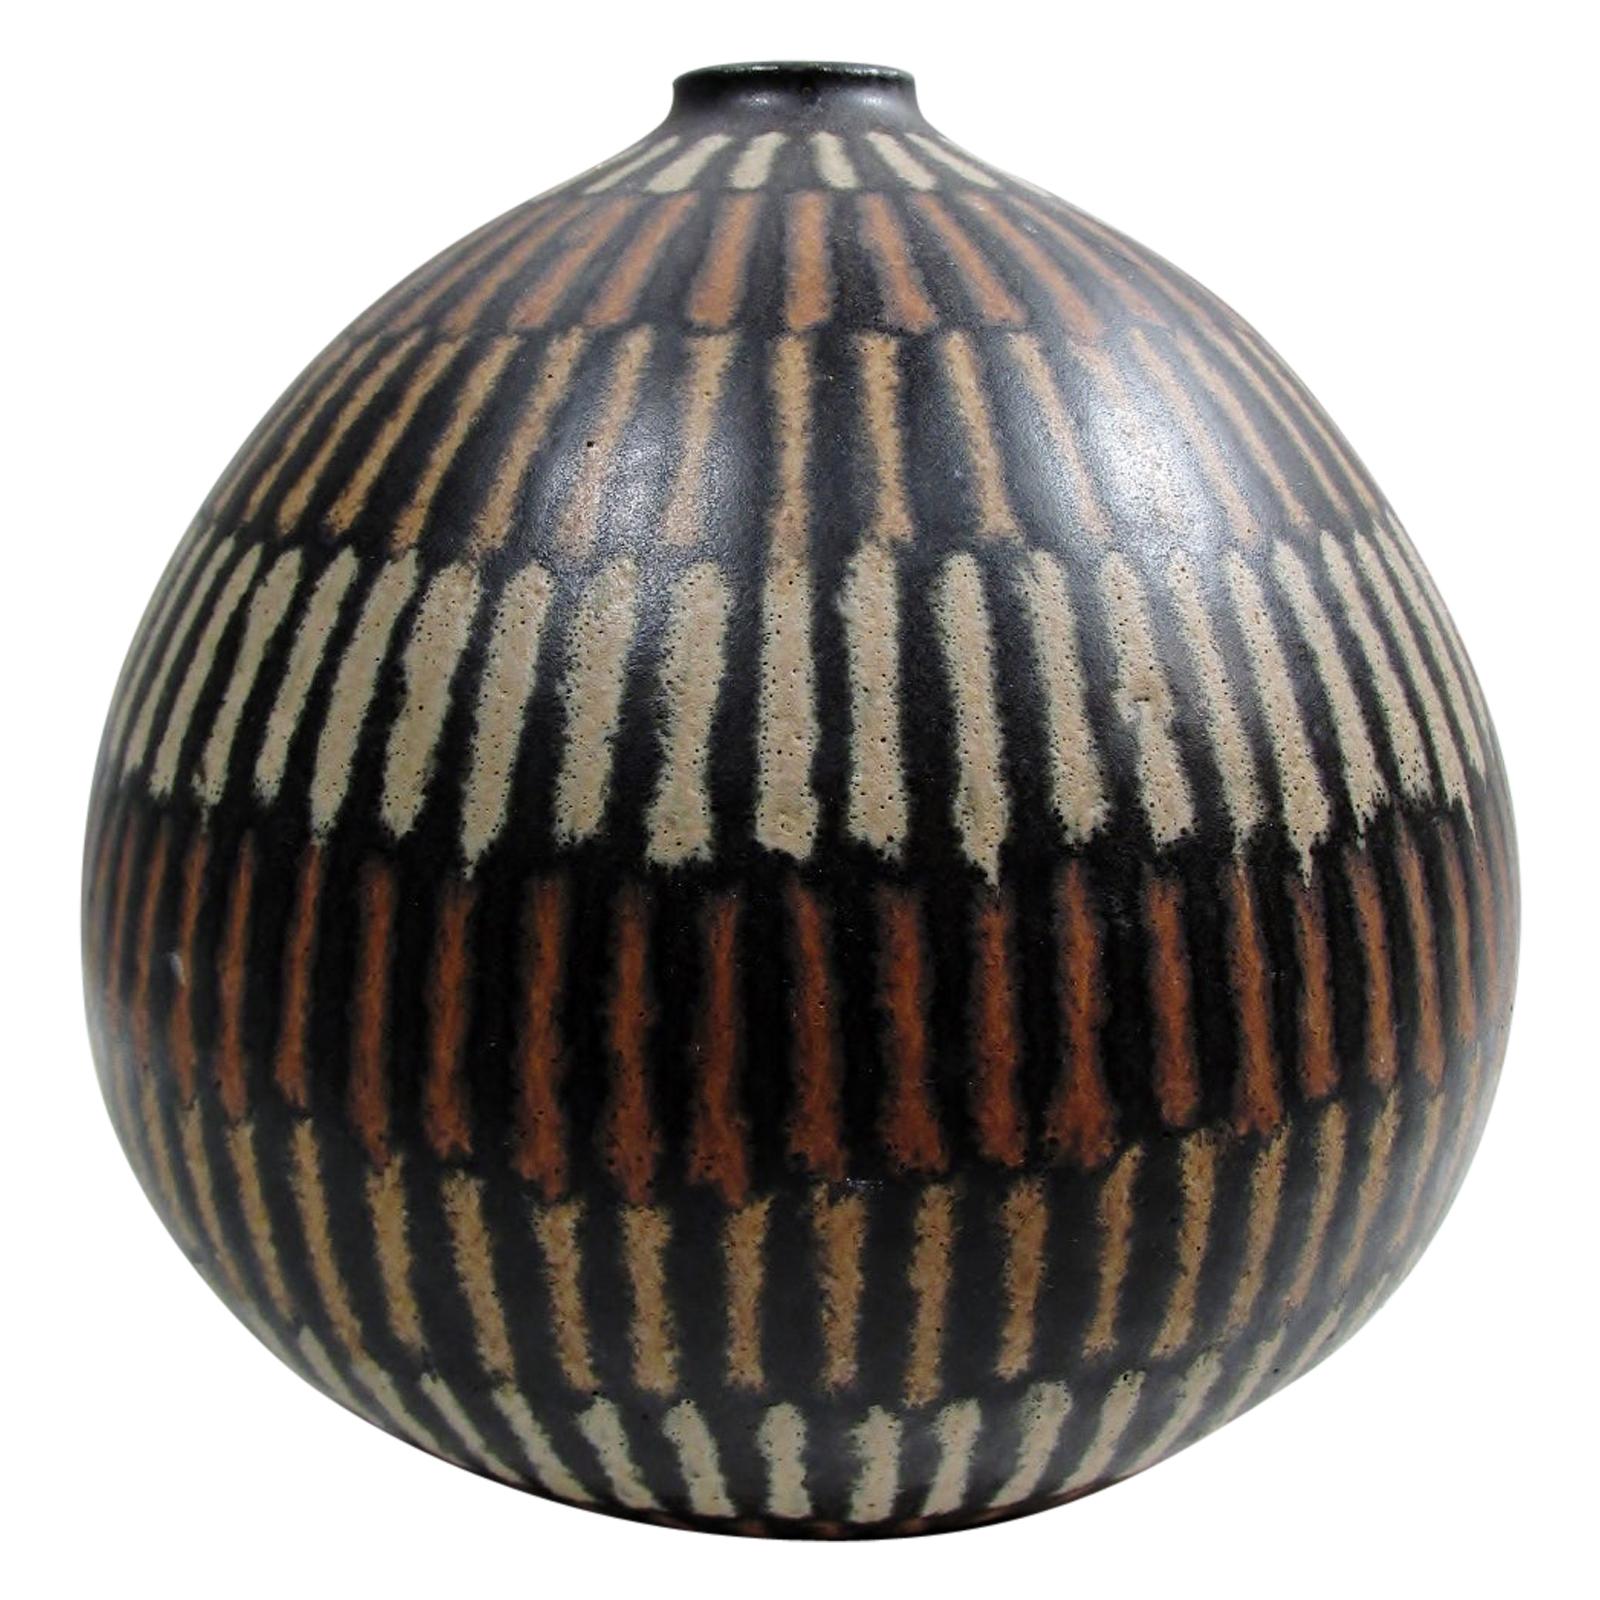 Clyde Burt Ceramic Bulbous Vase